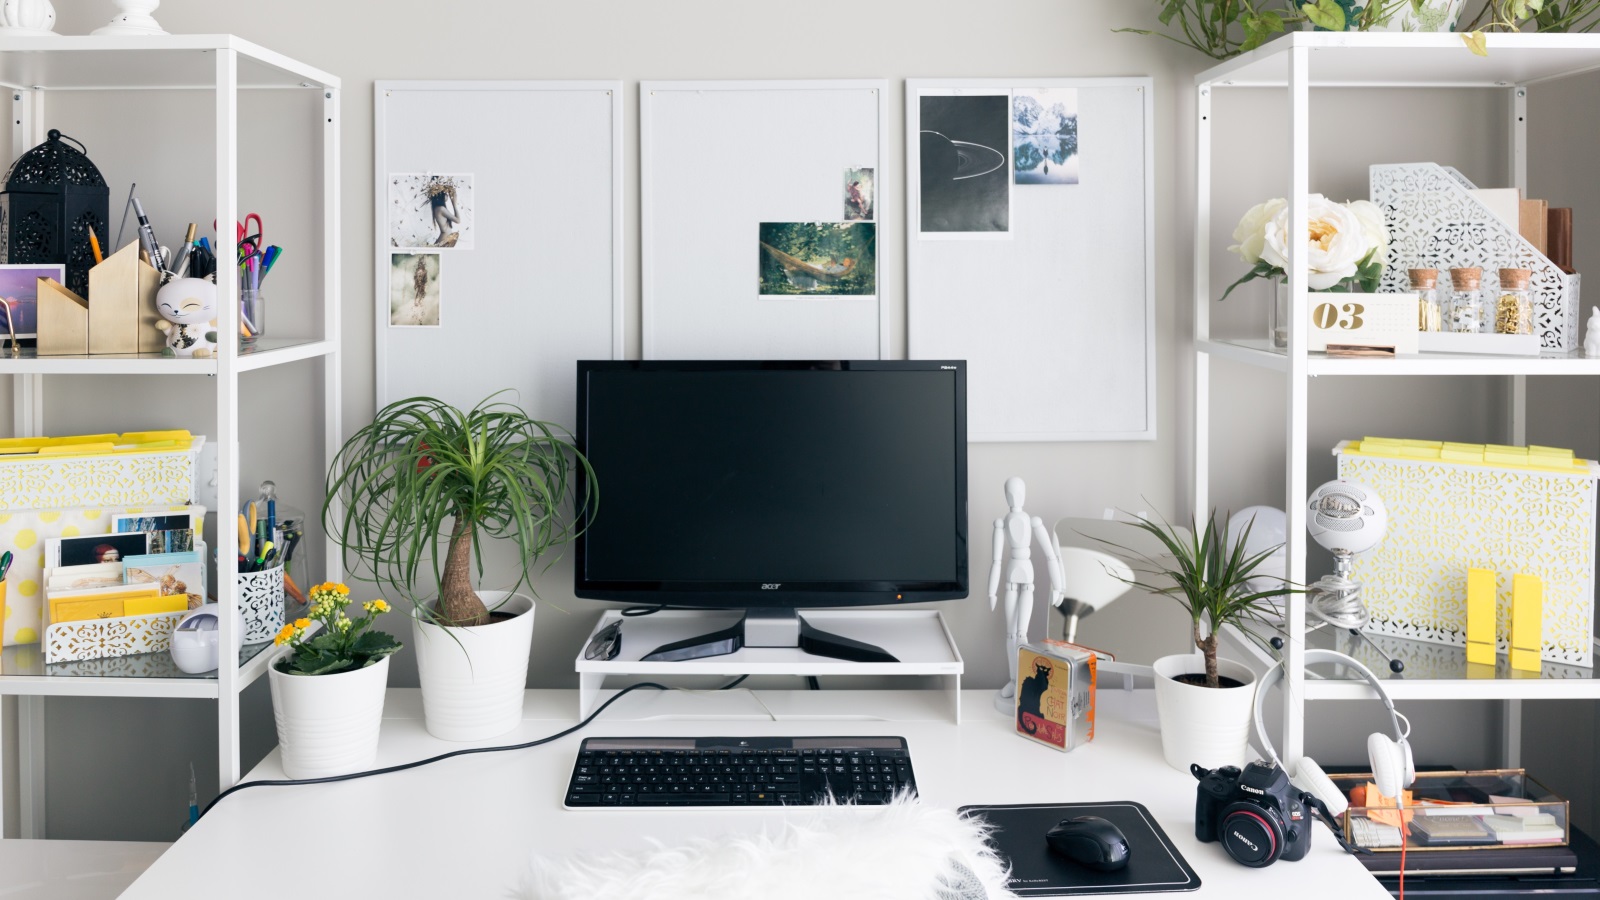 يُعتبر اللون الأخضر من الألوان المميزة التي ترتبط بالطبيعة والنمو، لذا يمكن استخدامه في غرفة المكتب لما له من تأثير جيد